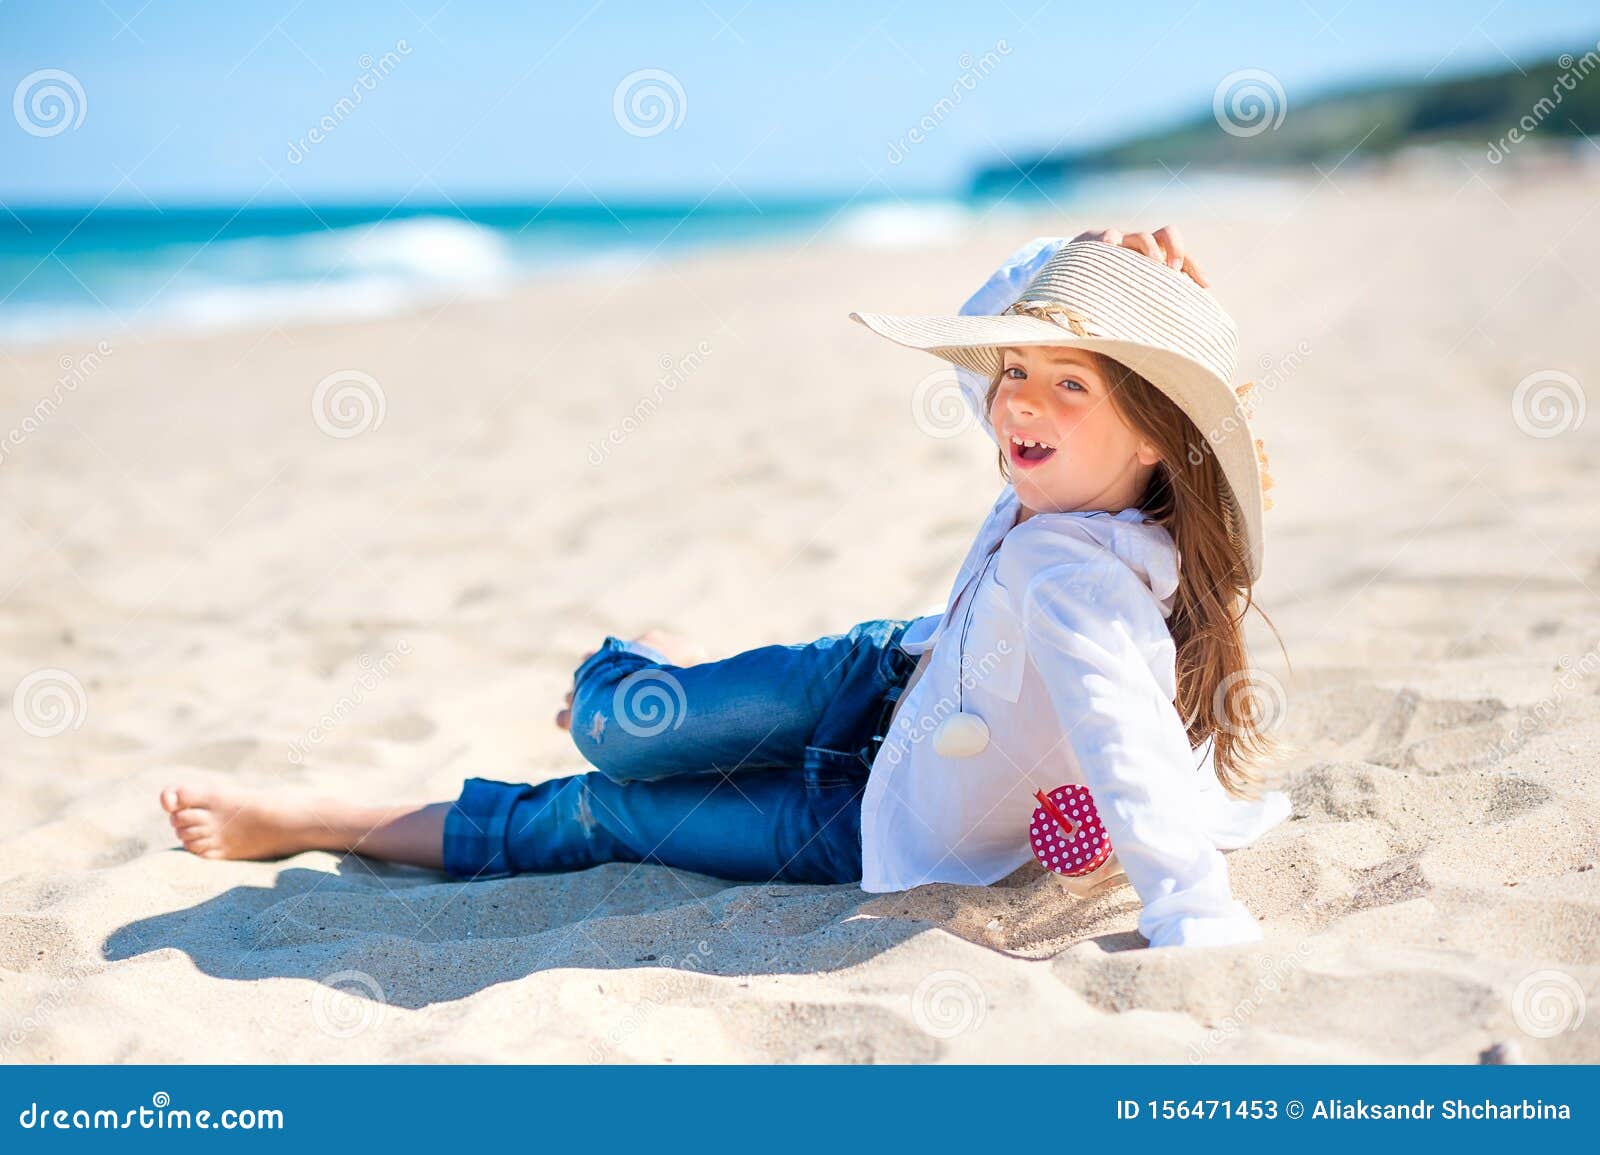 Una niña de sombrero azul de pie junto a la playa al atardecer